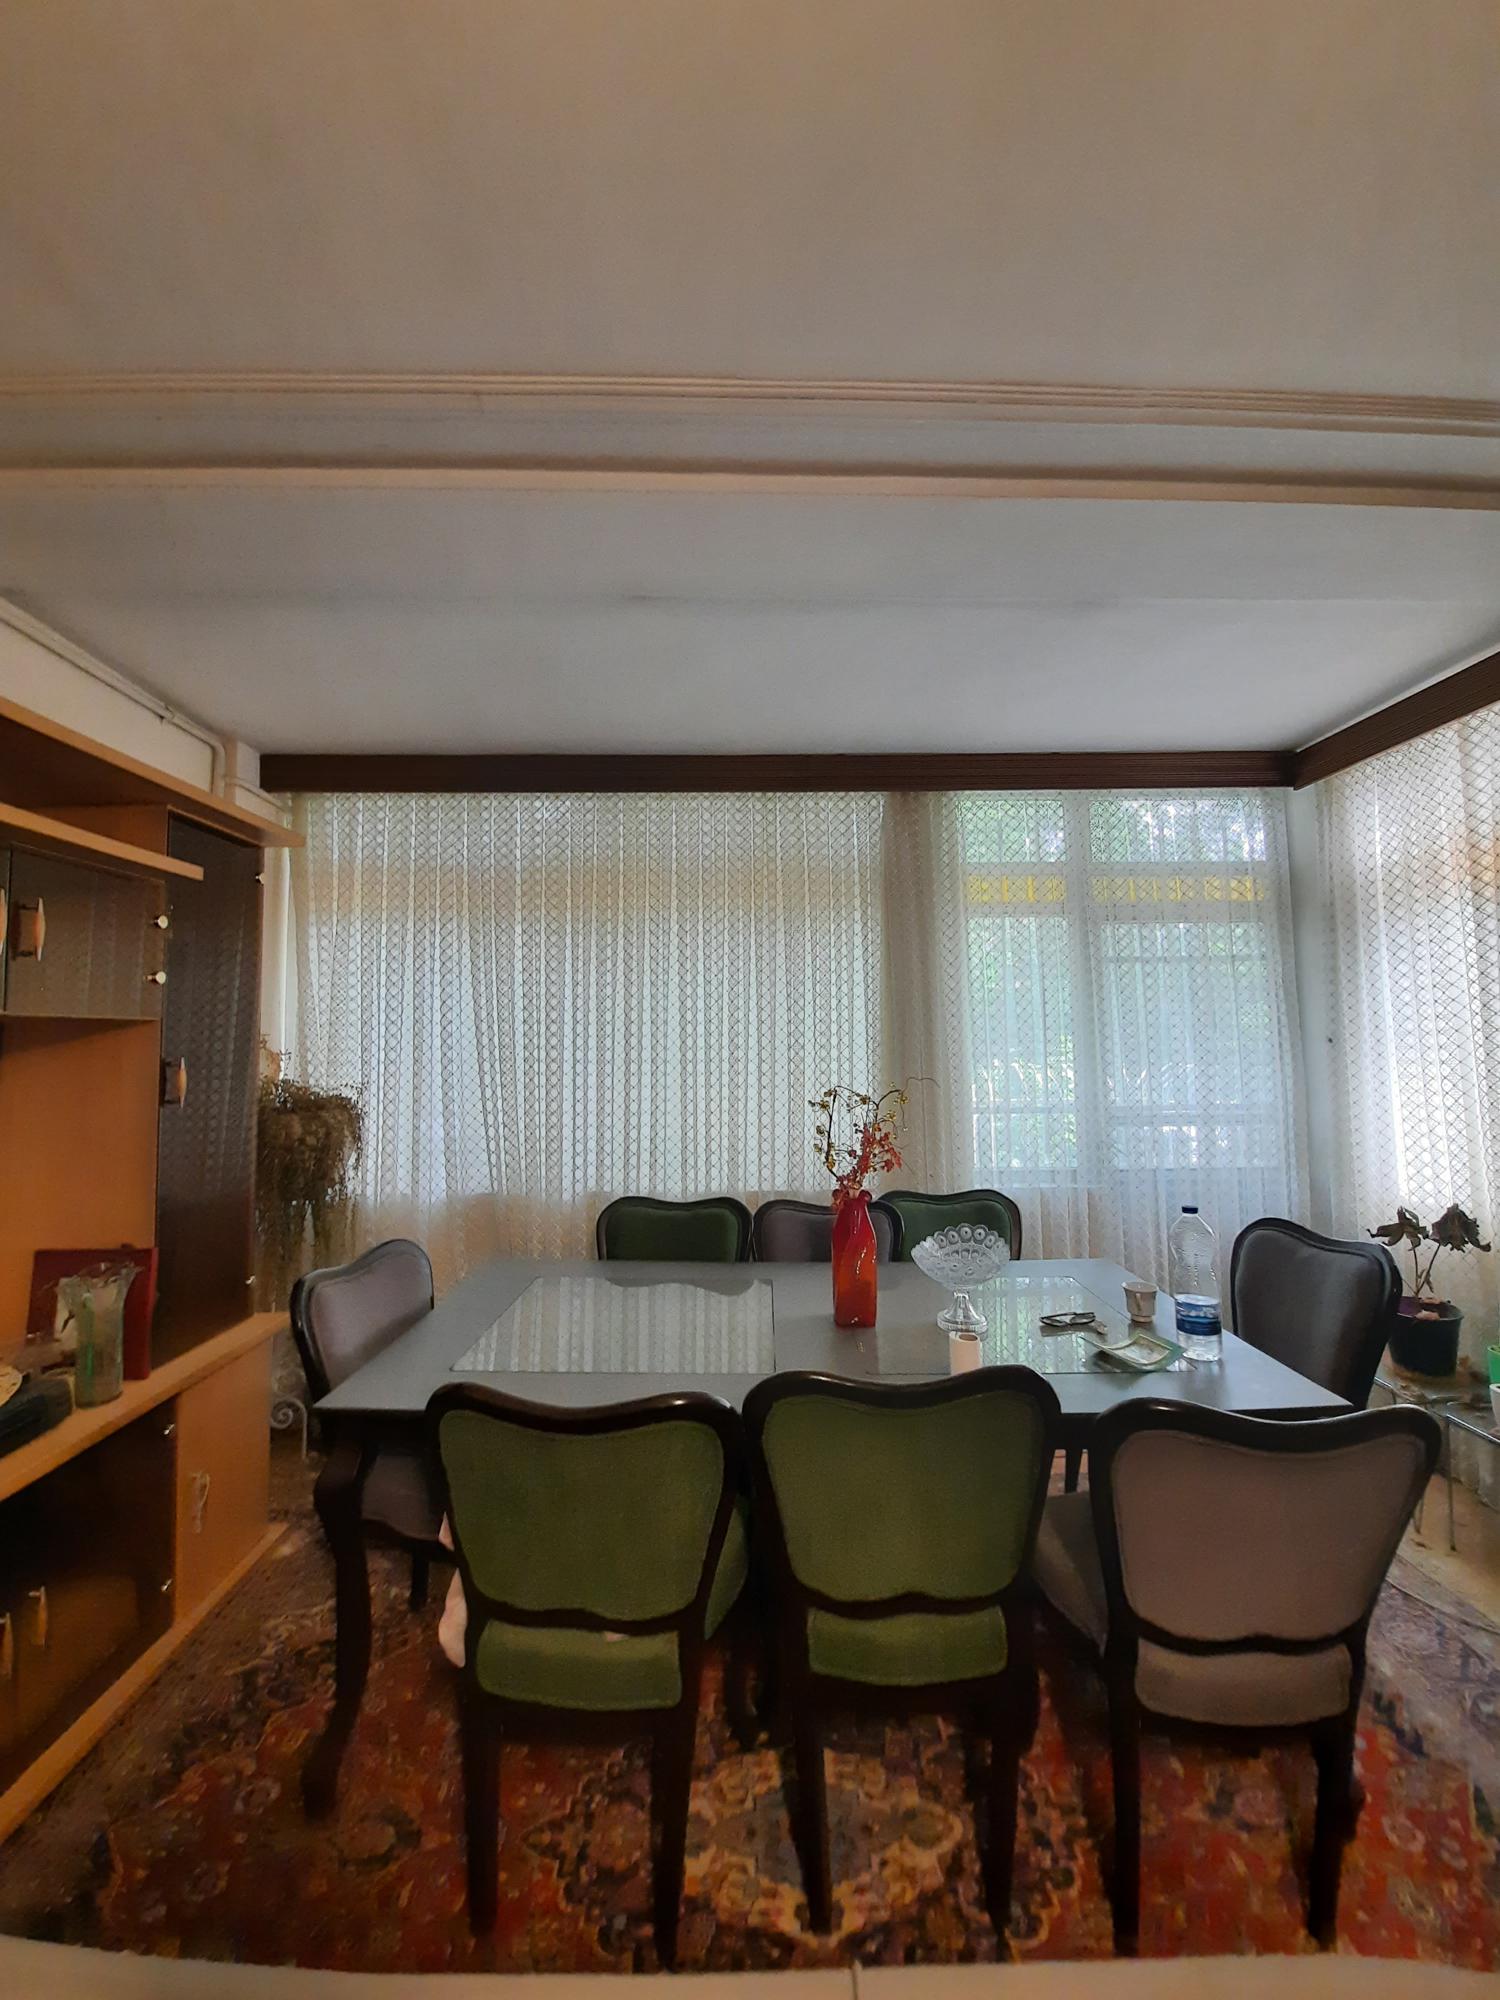 فروش آپارتمان ۹۲ متری دنج در دهکده المپیک جوانمردان چشمه